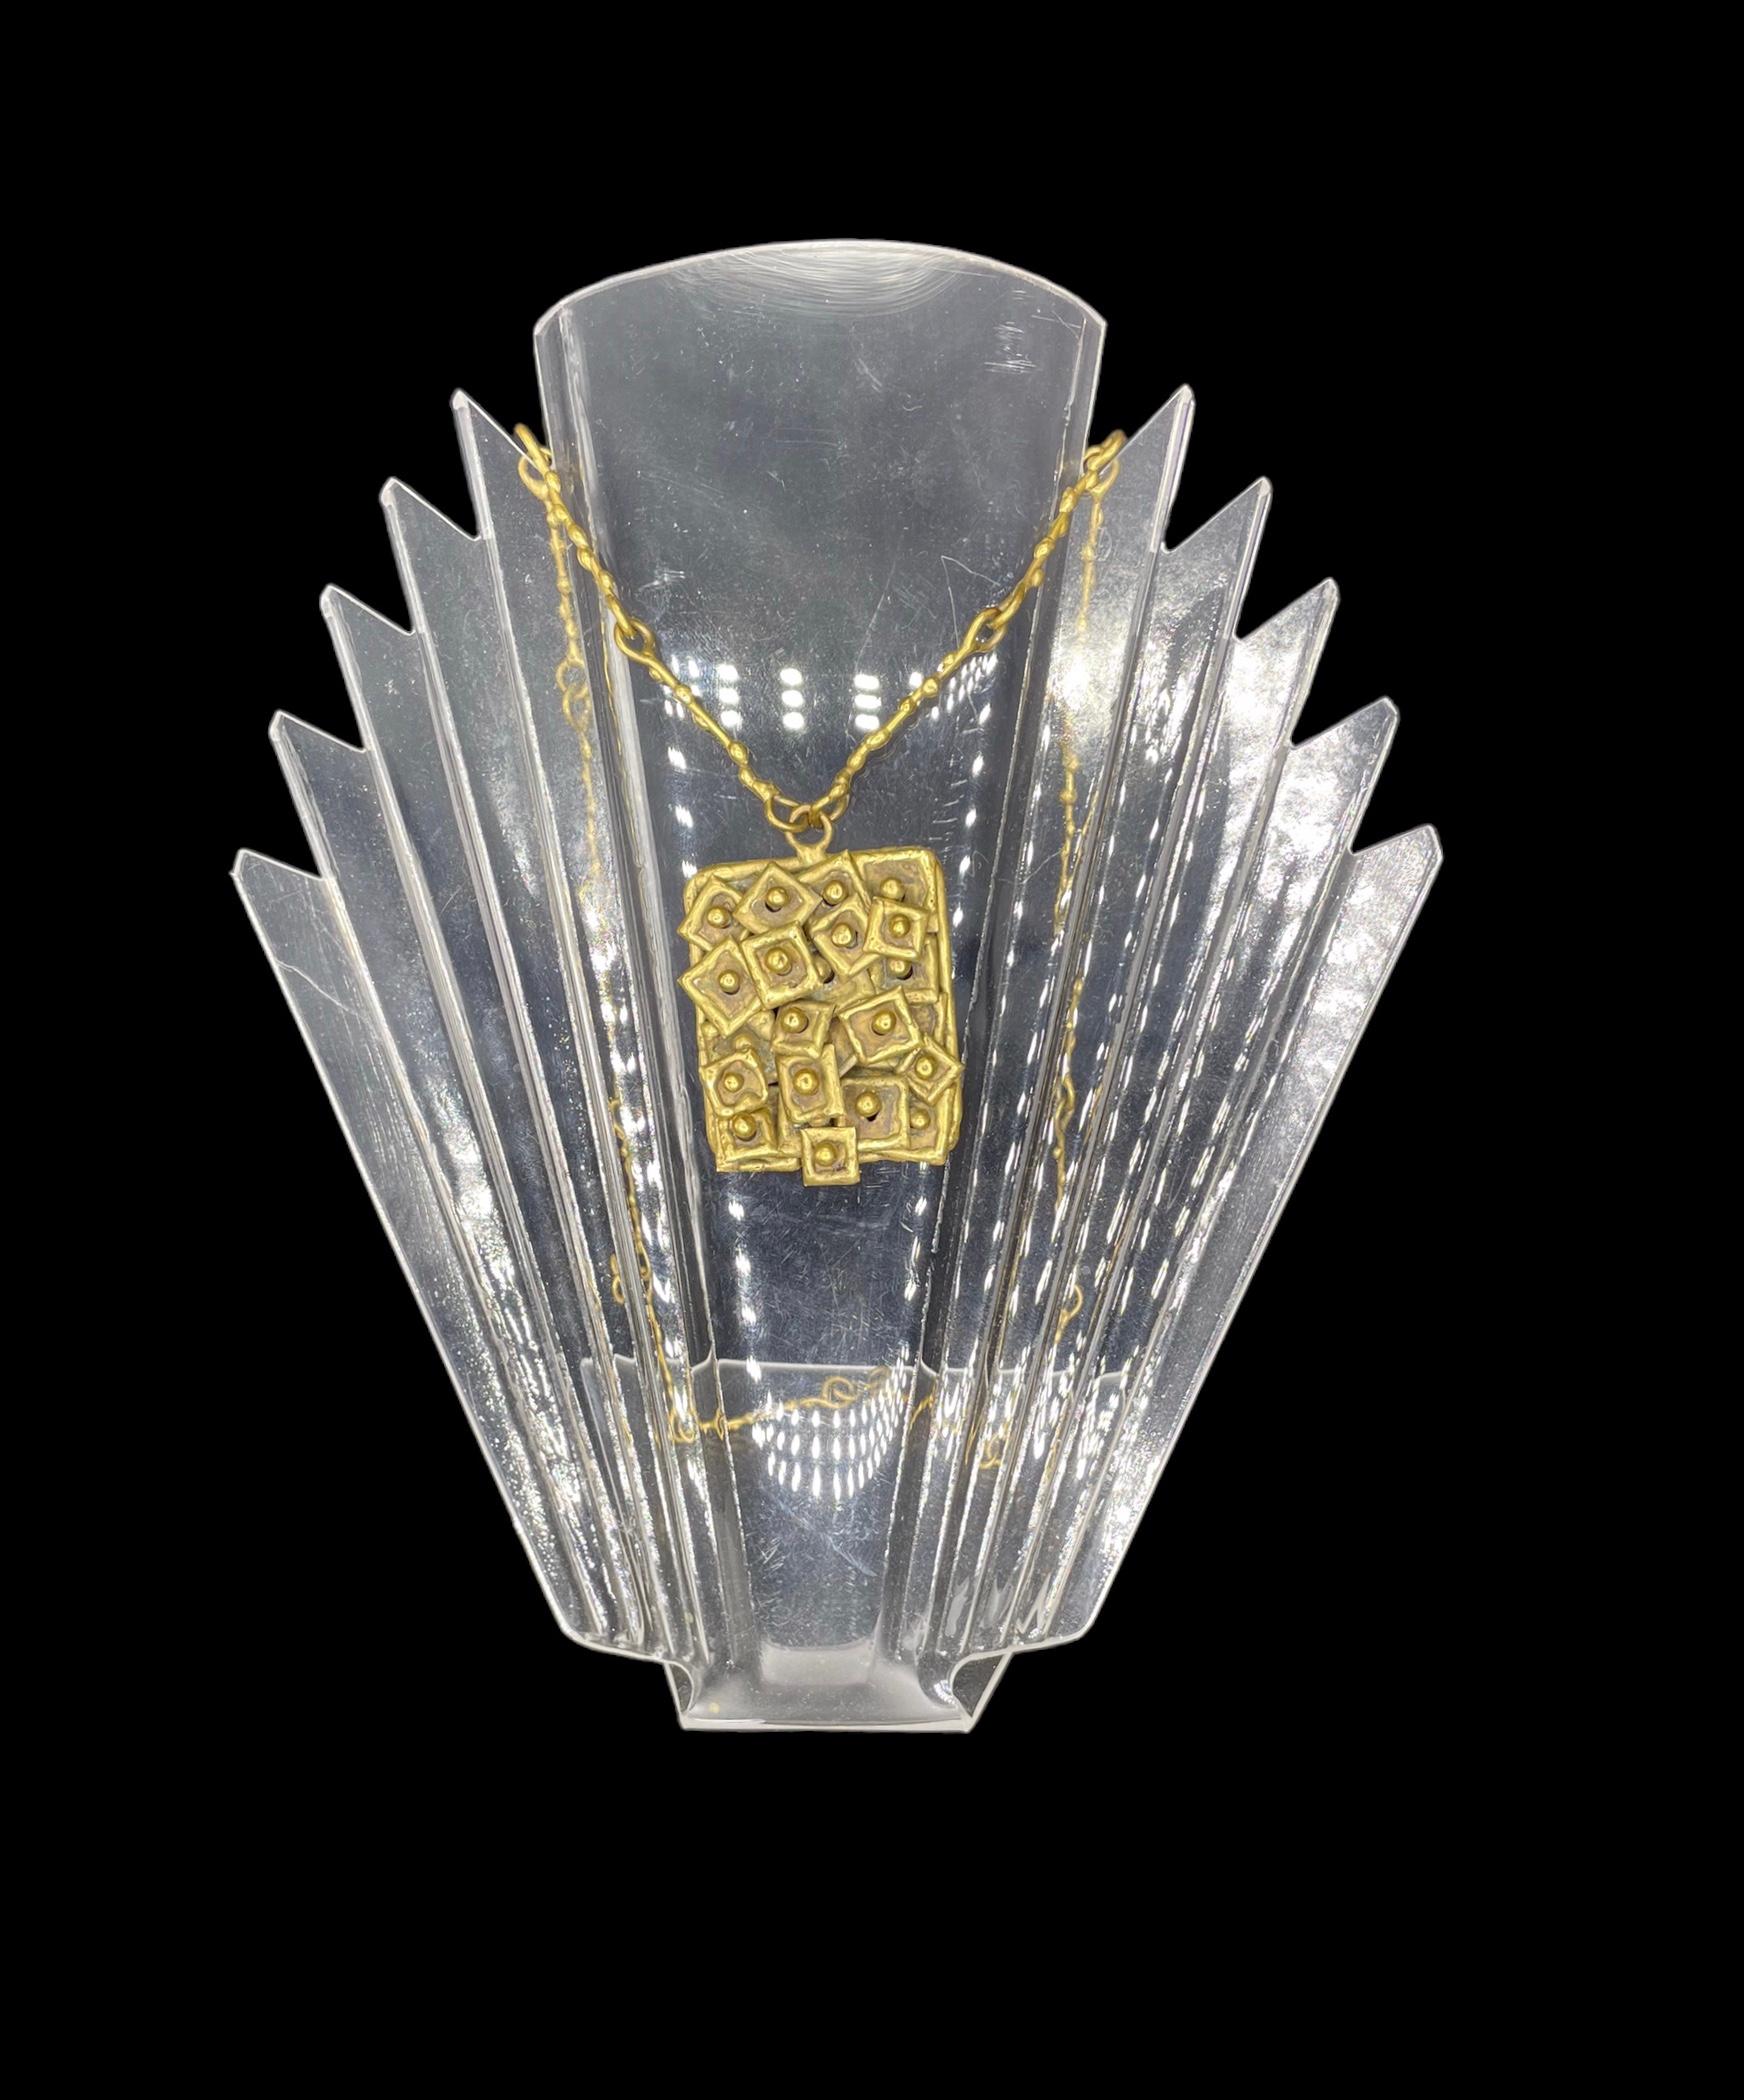 Entworfen von Pal Kepenyes (1926-2021) ist die brutalistische Halskette aus Messing mit einer natürlichen, gealterten Patina.  Sie ist mit sich überlappenden Kacheln verziert, was dem handgefertigten Stück ein Gefühl der Bewegung verleiht. Die